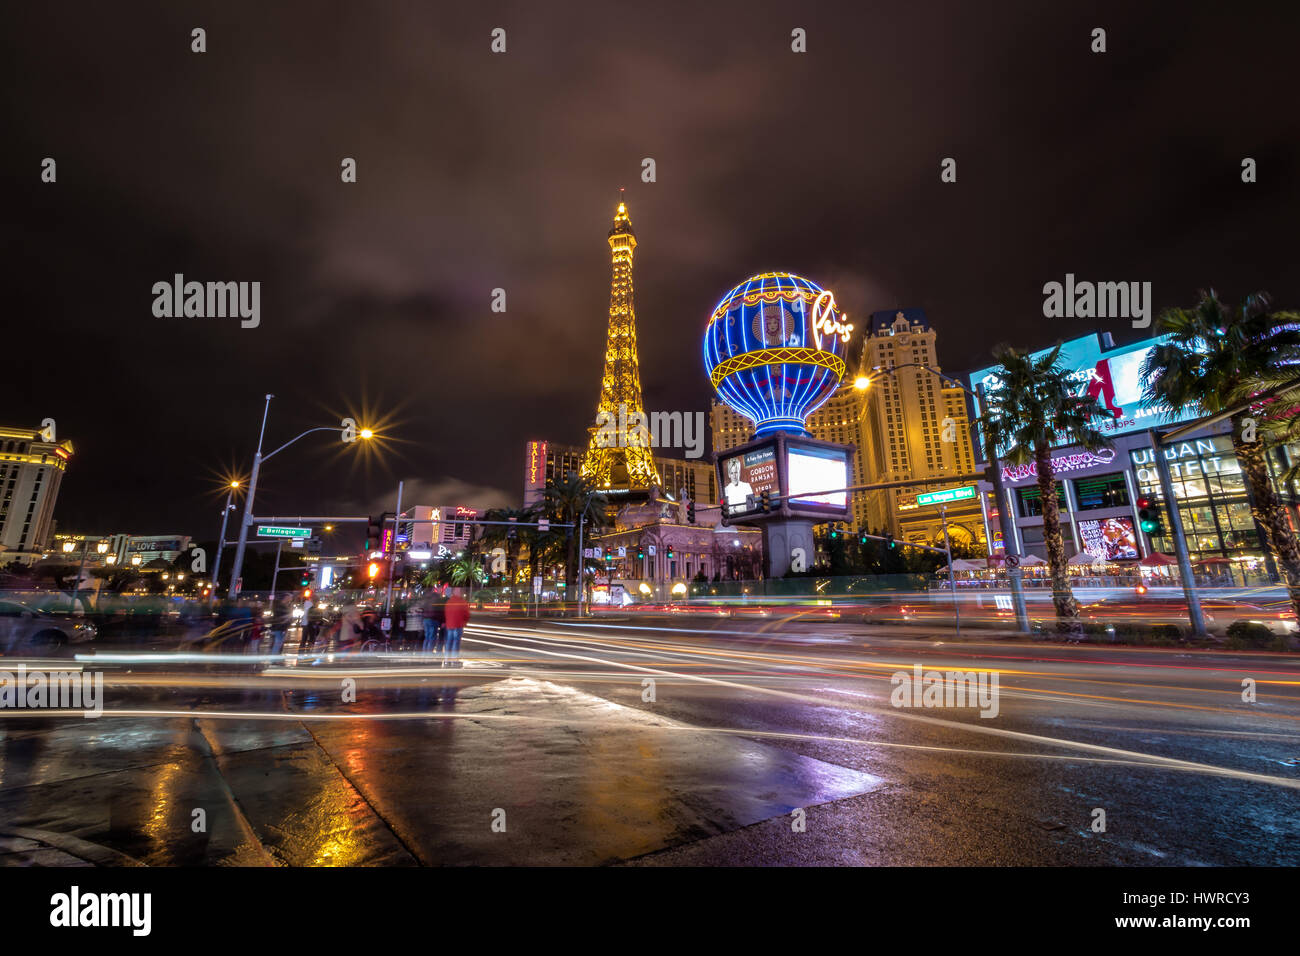 Las Vegas Strip and Paris Hotel Casino at night - Las Vegas, Nevada, USA Stock Photo